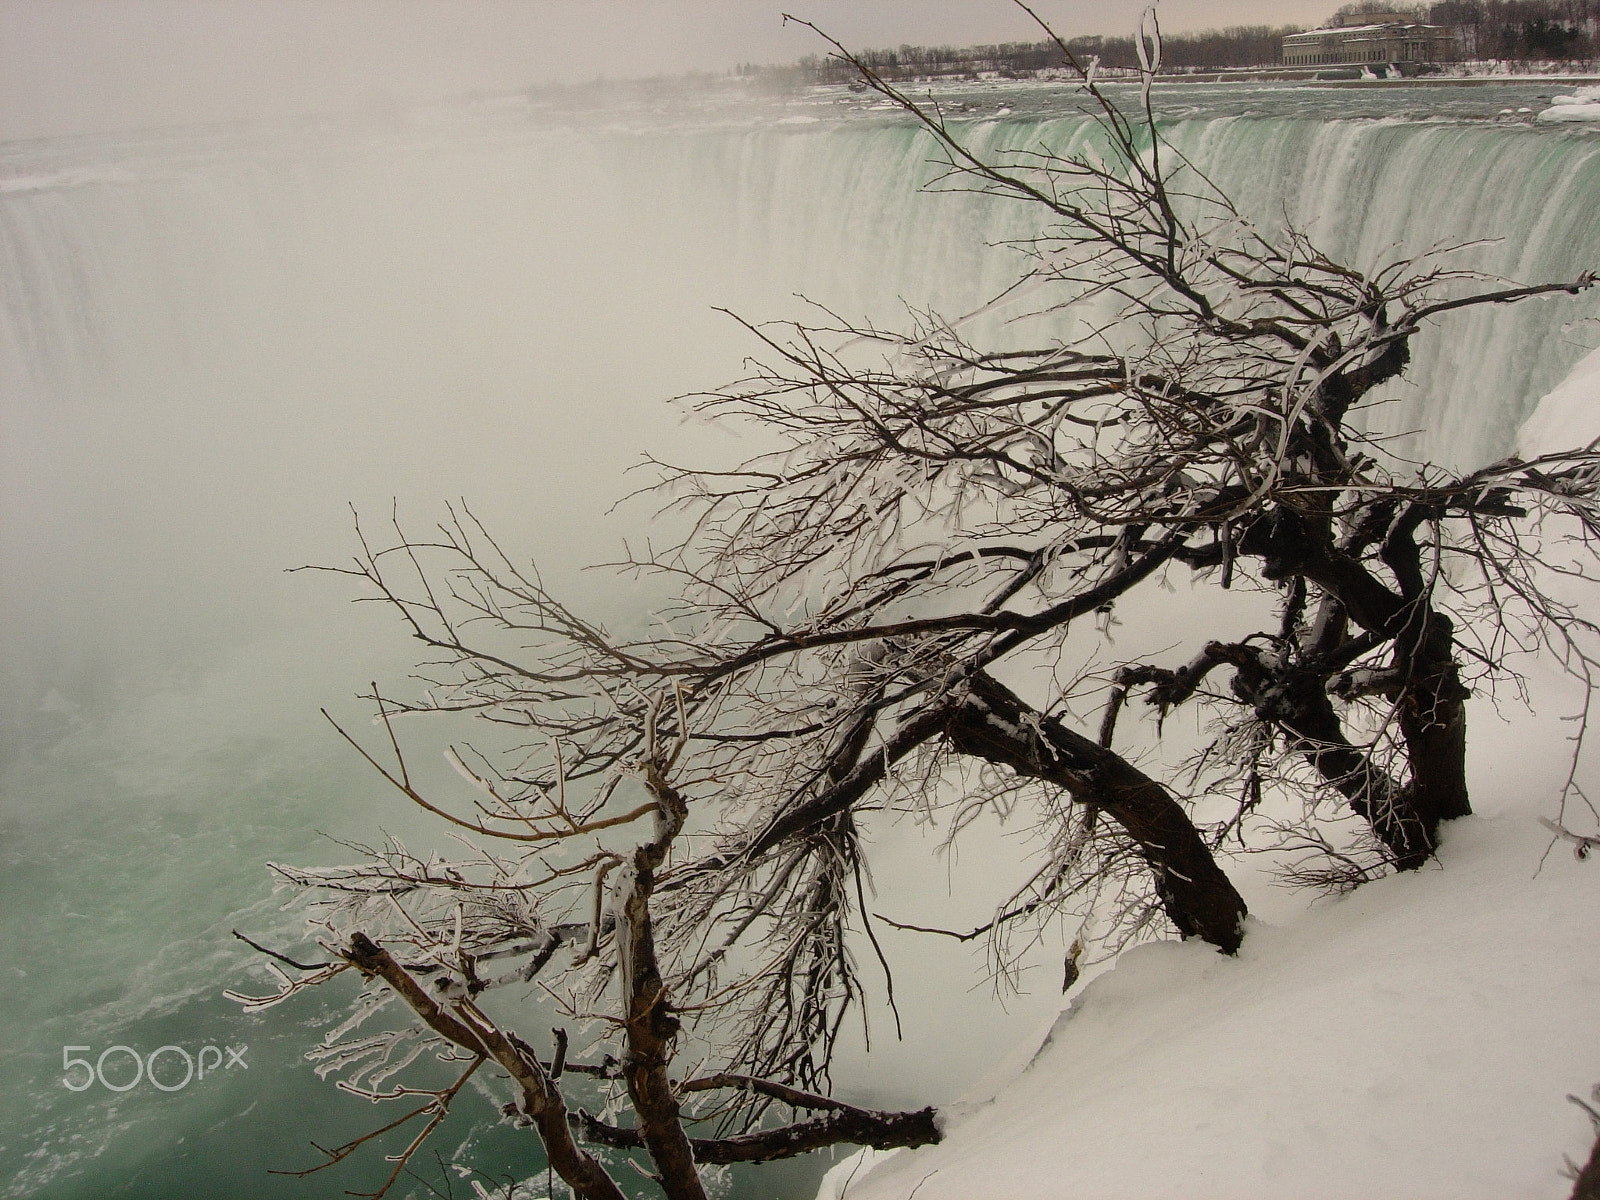 Nikon E5200 sample photo. Niagara fall in march photography